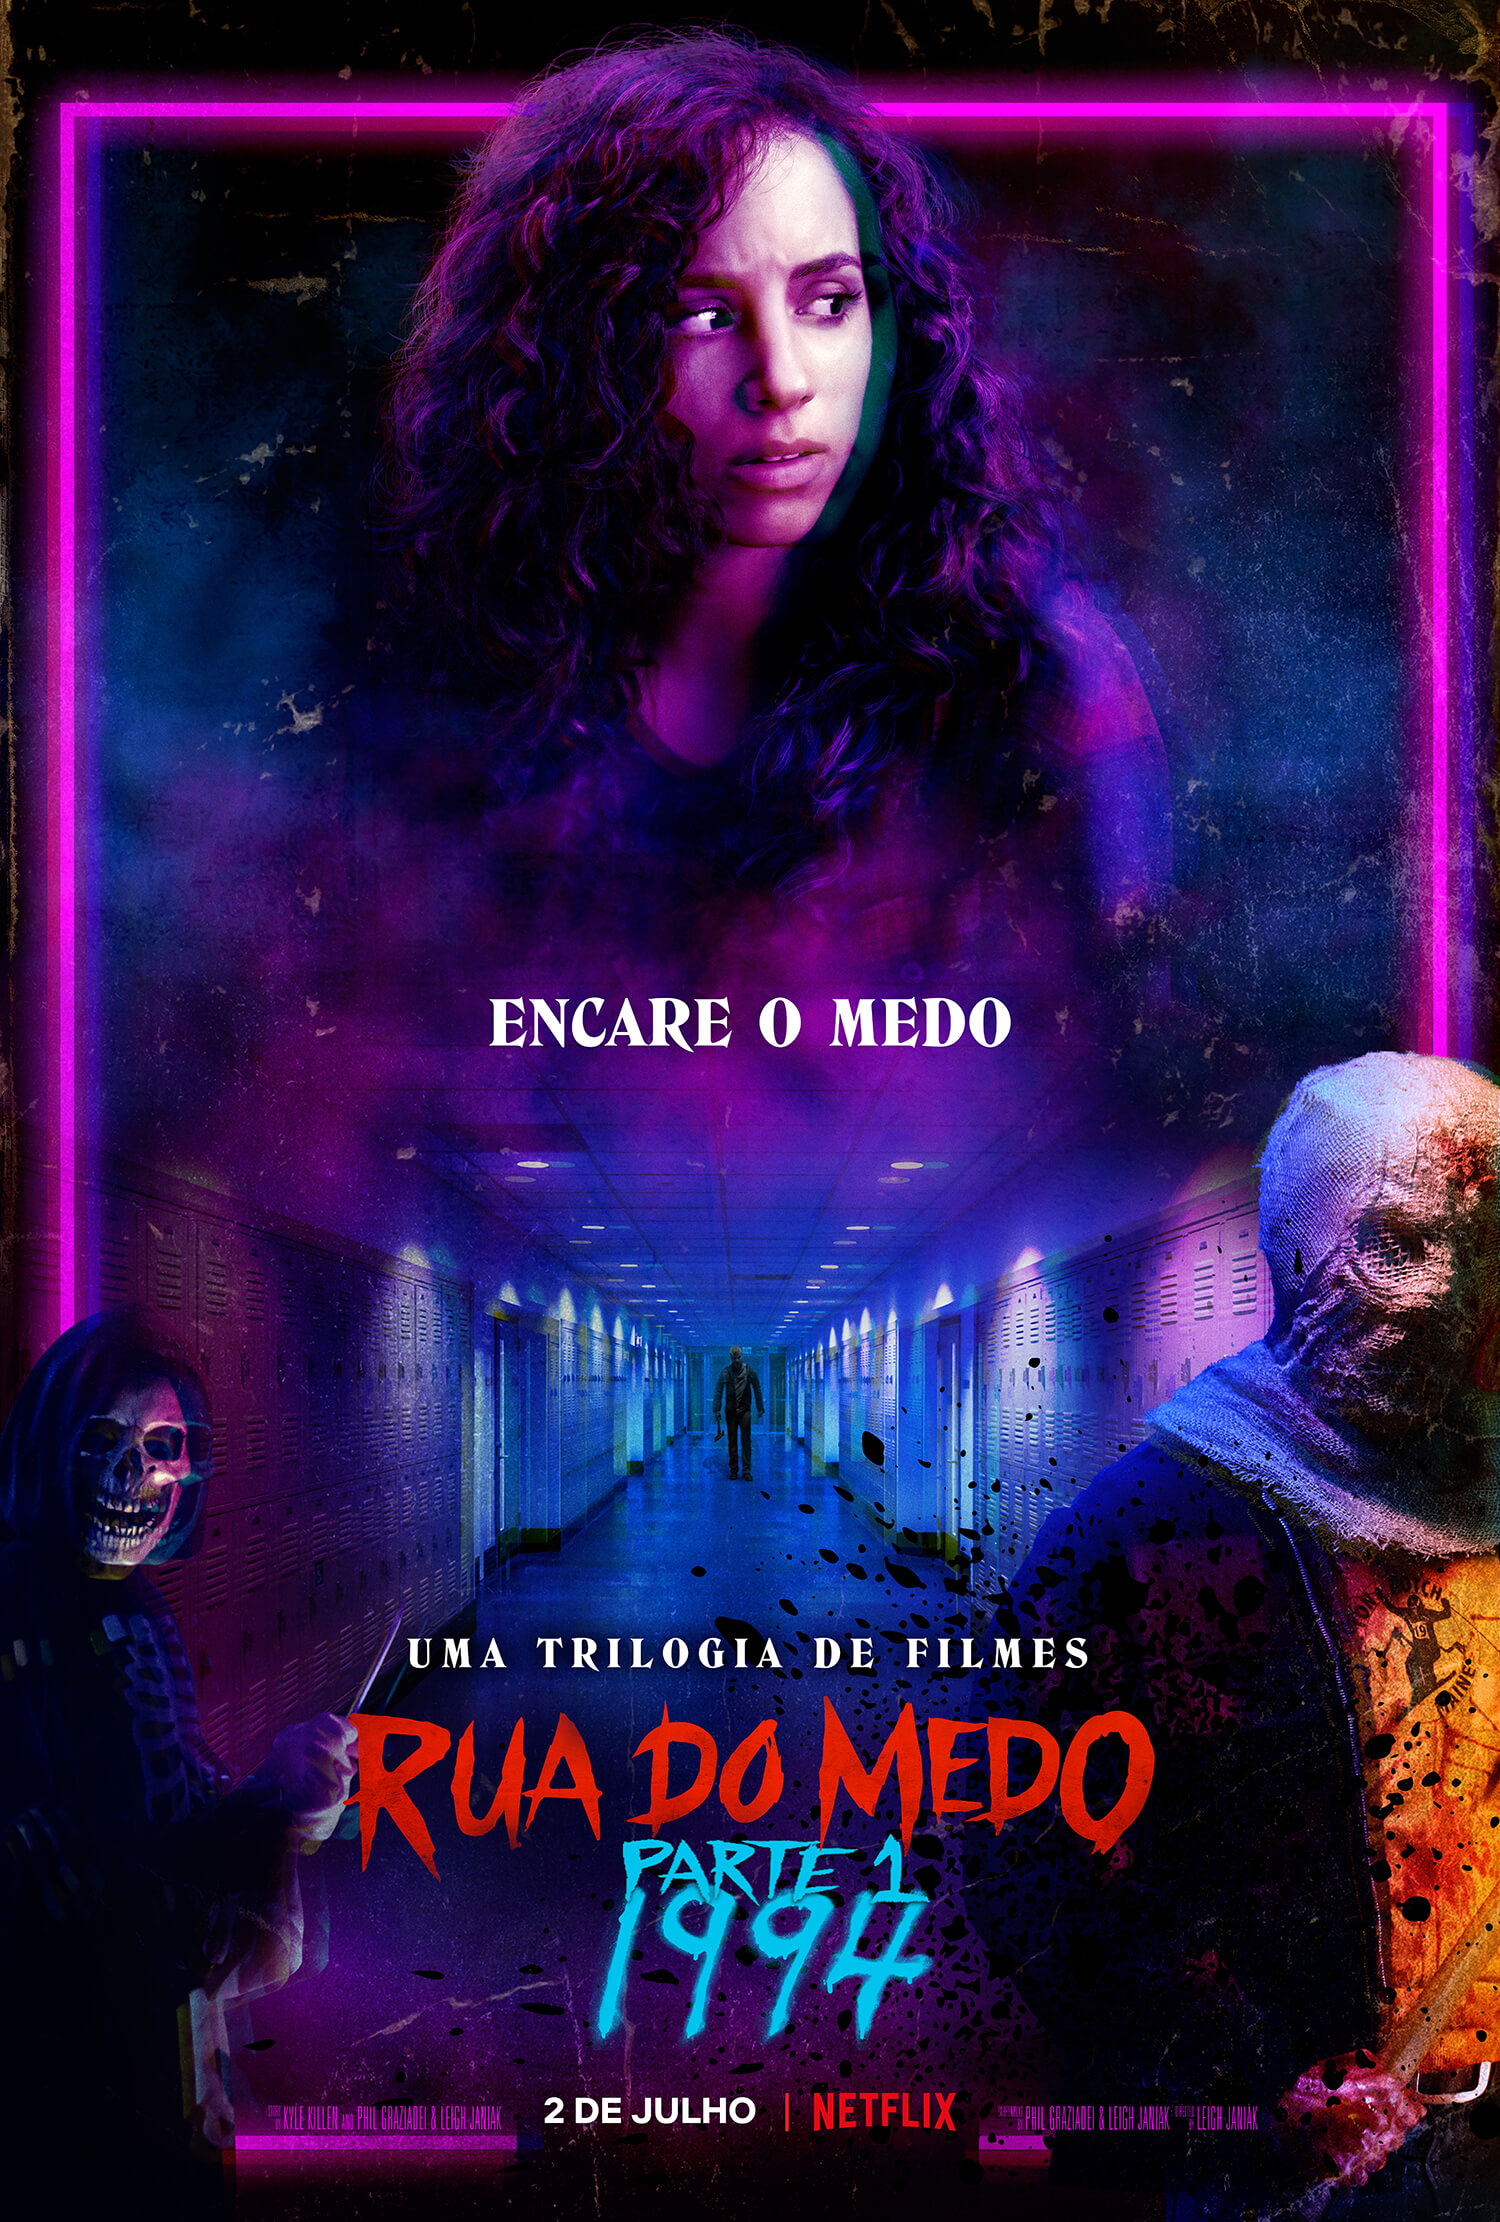 rua-do-medo-parte-1-1994-netflix-filme-terror